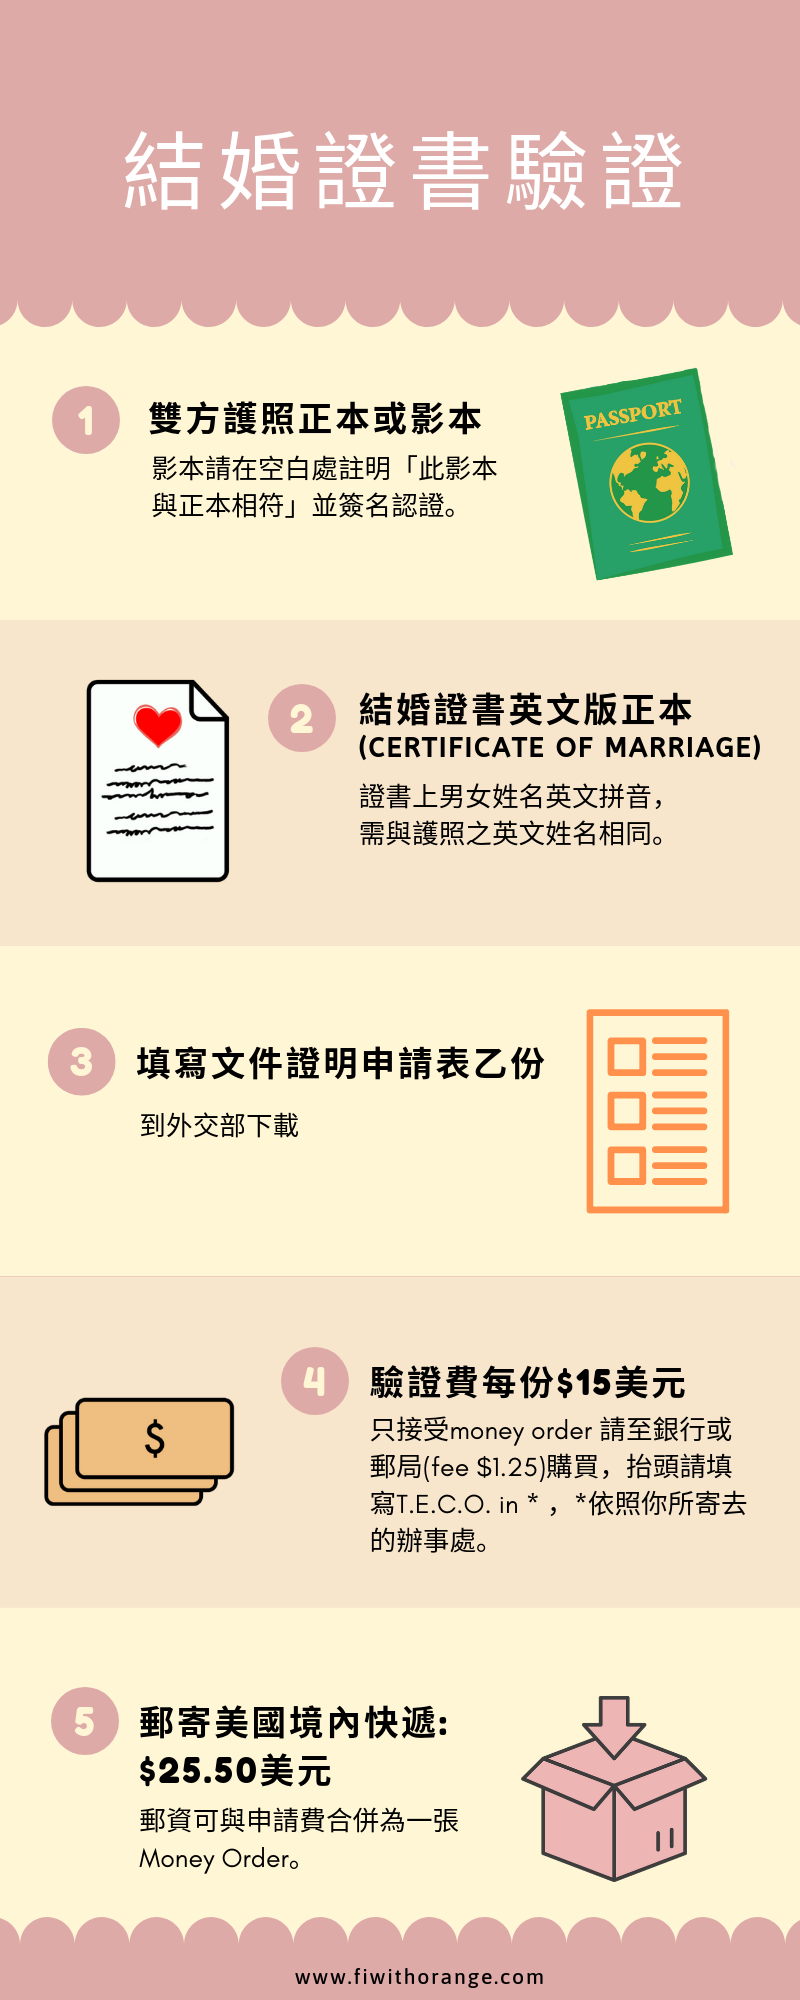 美國結婚證書驗證所需資料及申請程序